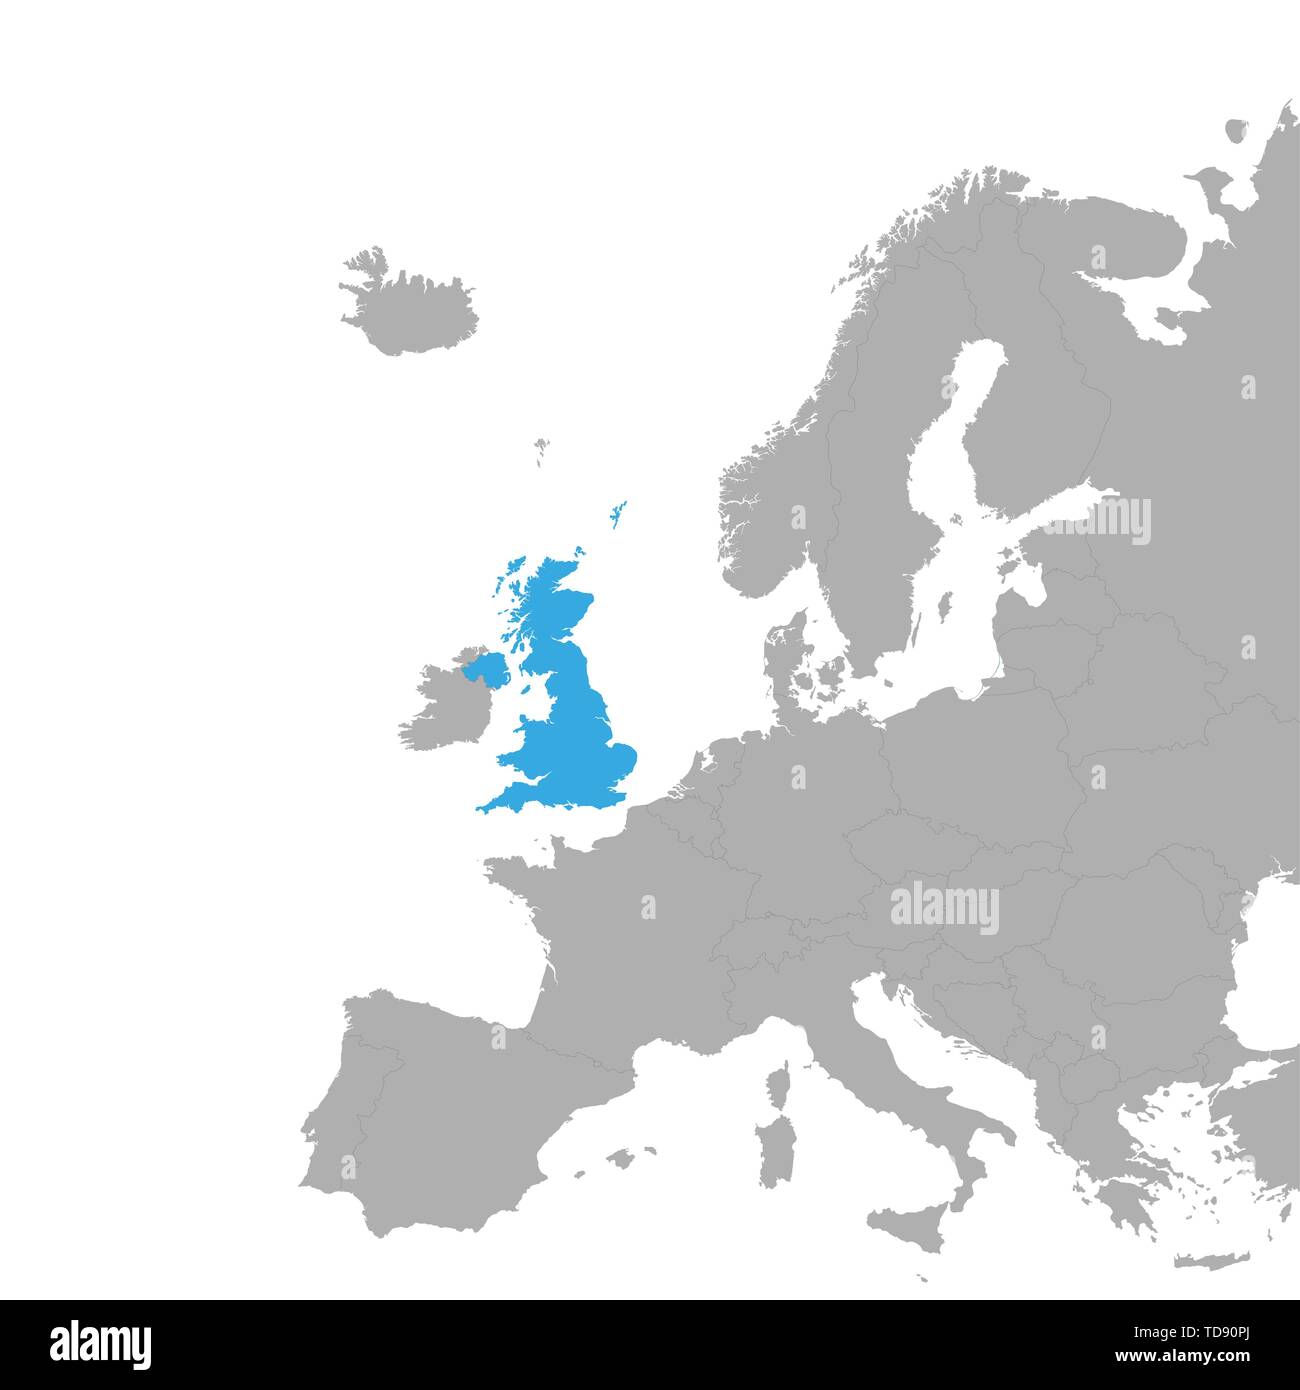 Die Karte von Großbritannien ist in Blau auf der Karte Europas hervorgehoben. Vektor Stock Vektor